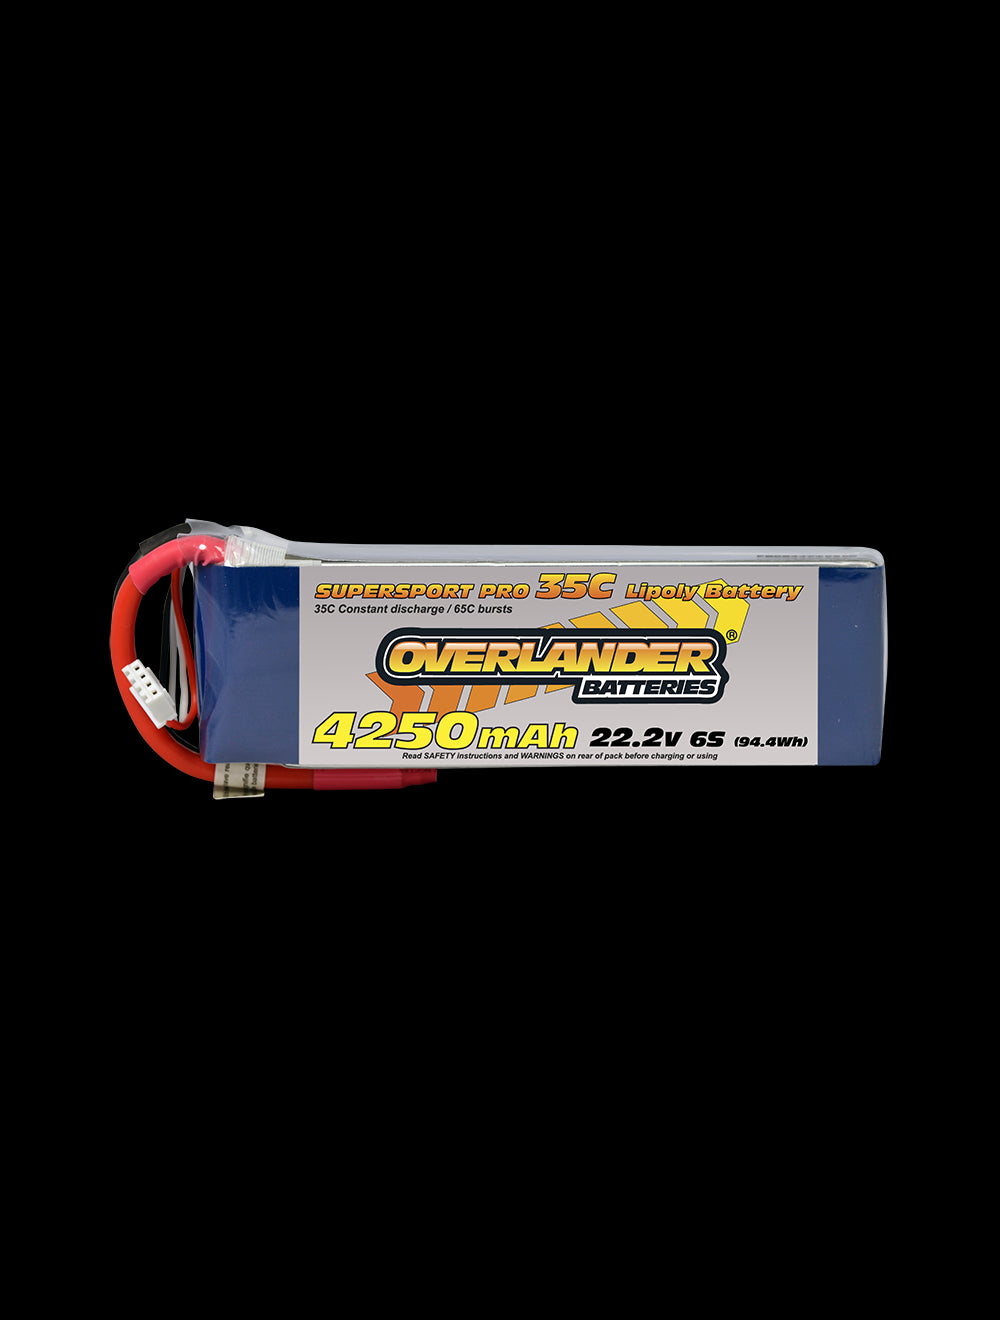 Overlander 4250mAh 22.2V 6S 35C Supersport Pro LiPo Battery - XT90 Connector 2478